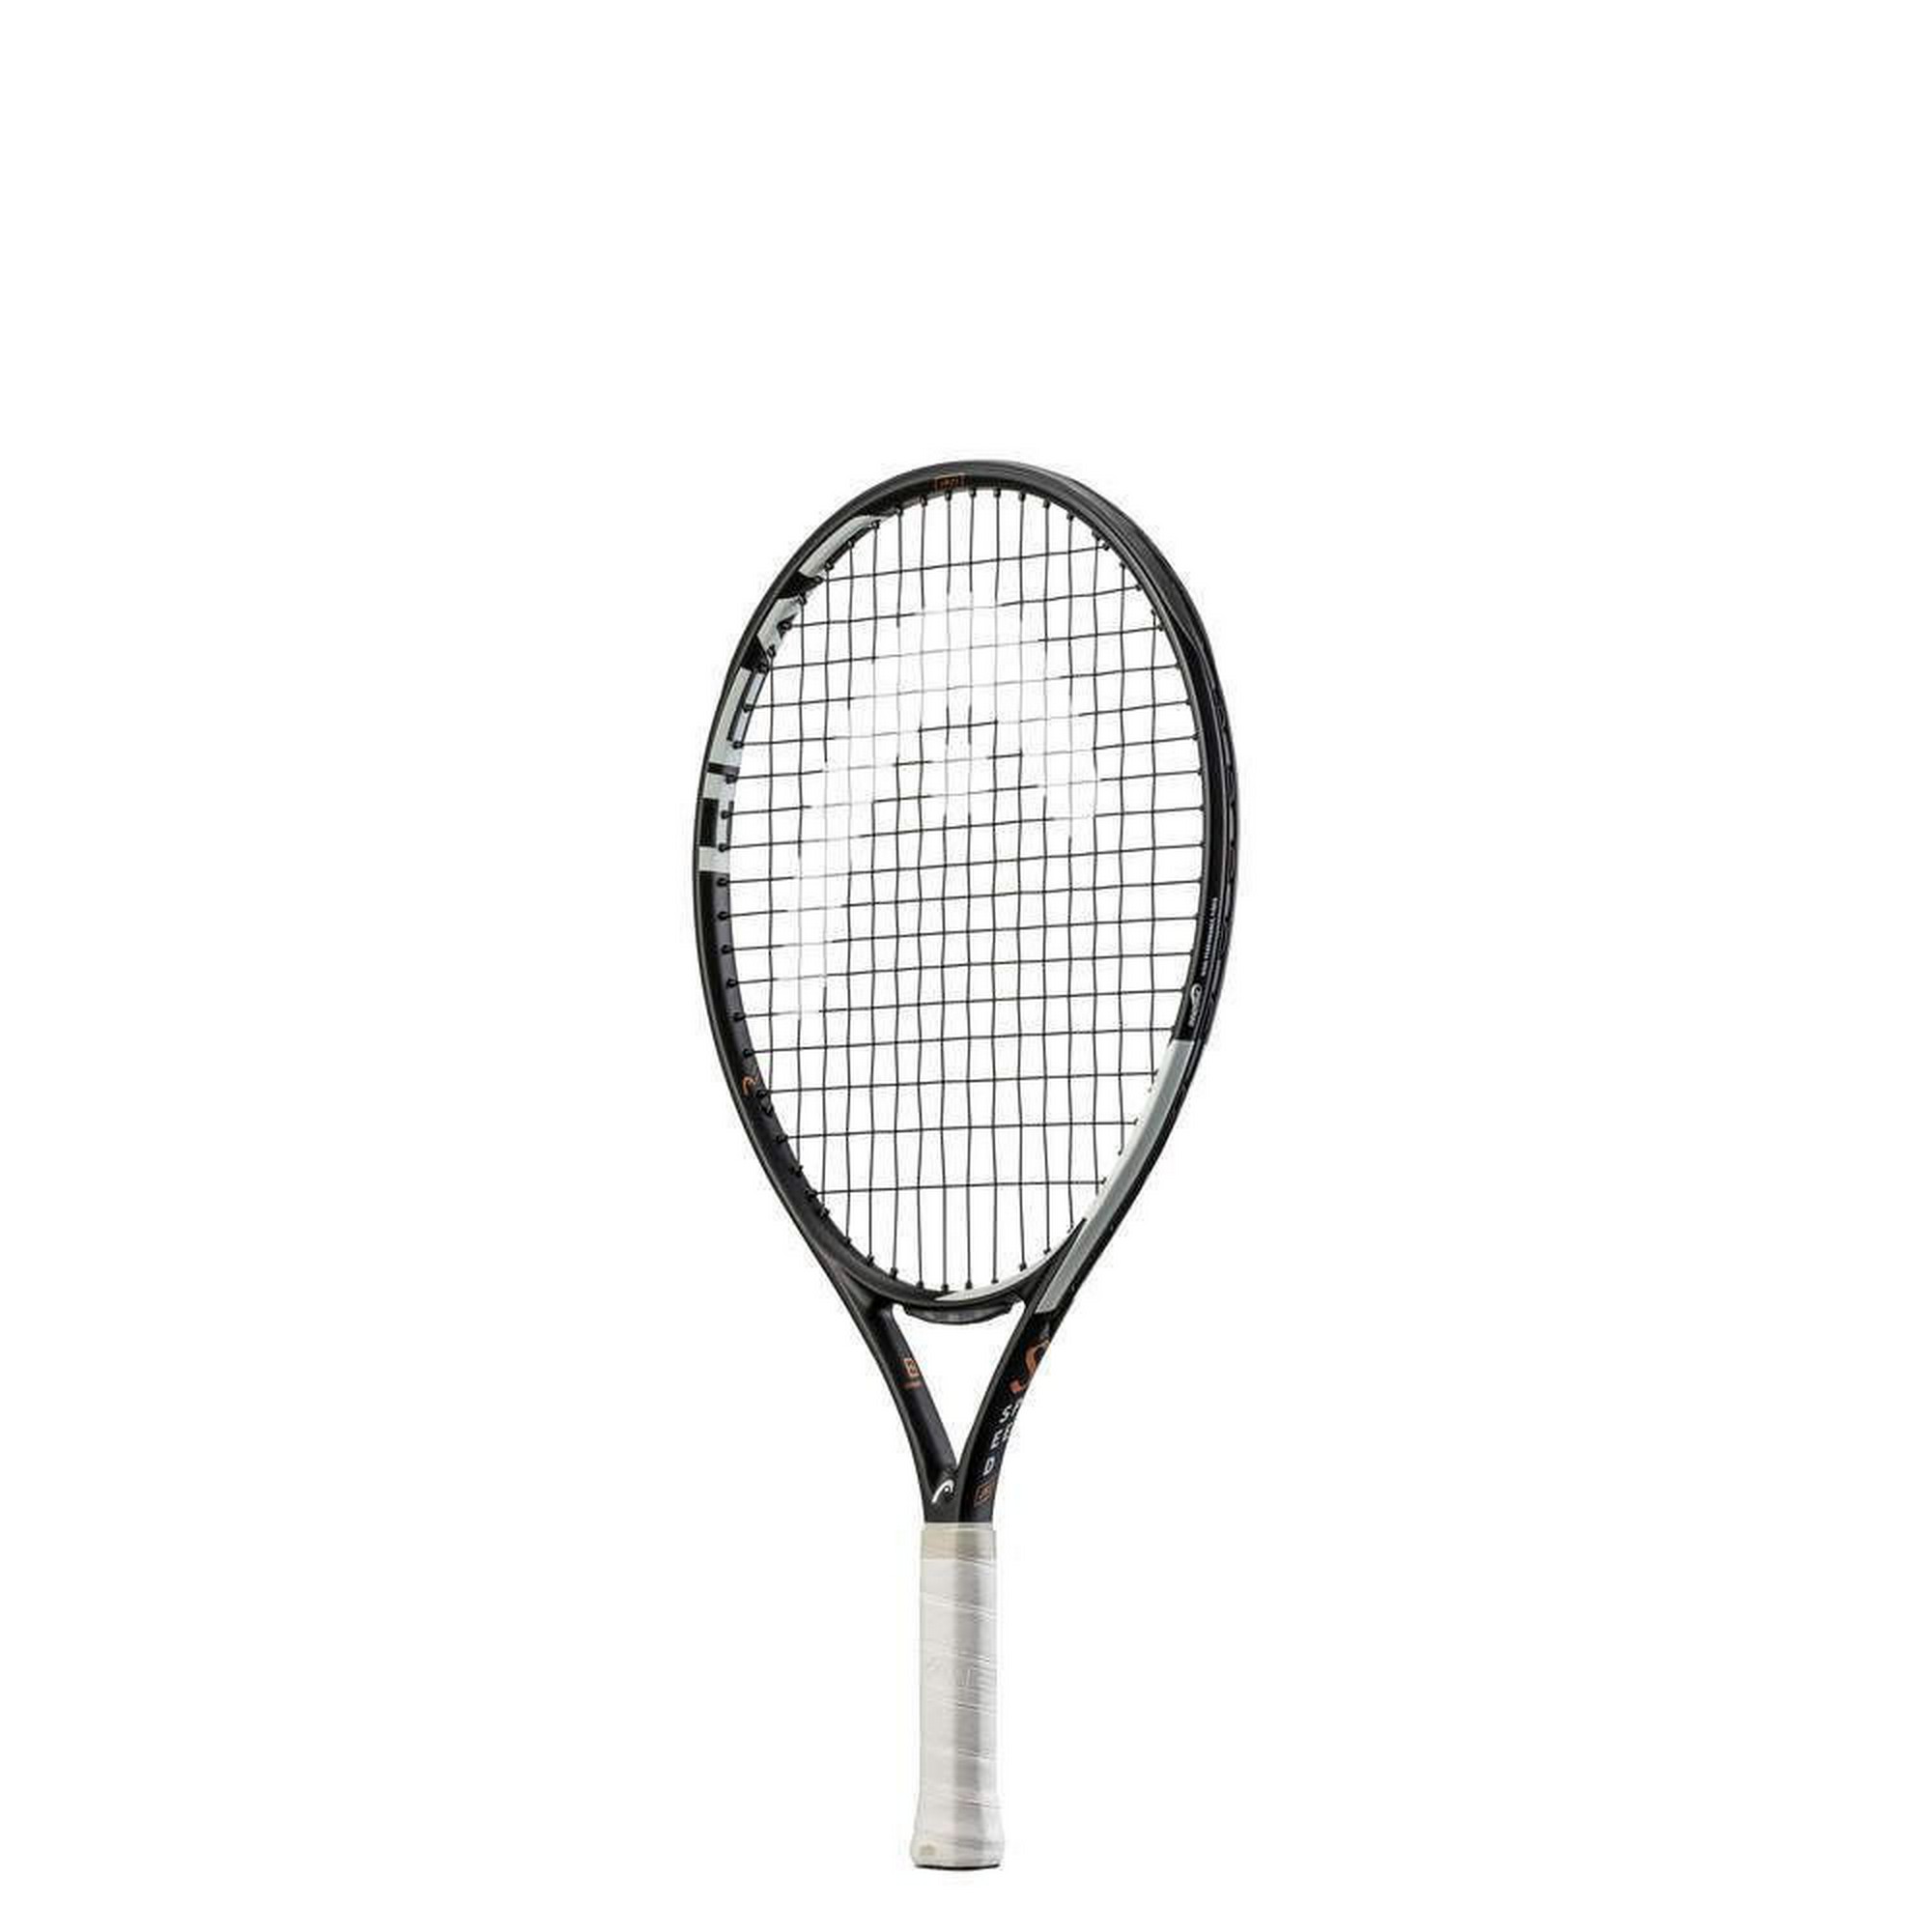 Ракетка для большого тенниса детская Head Speed 21 Gr06 234032 серый - фото 1